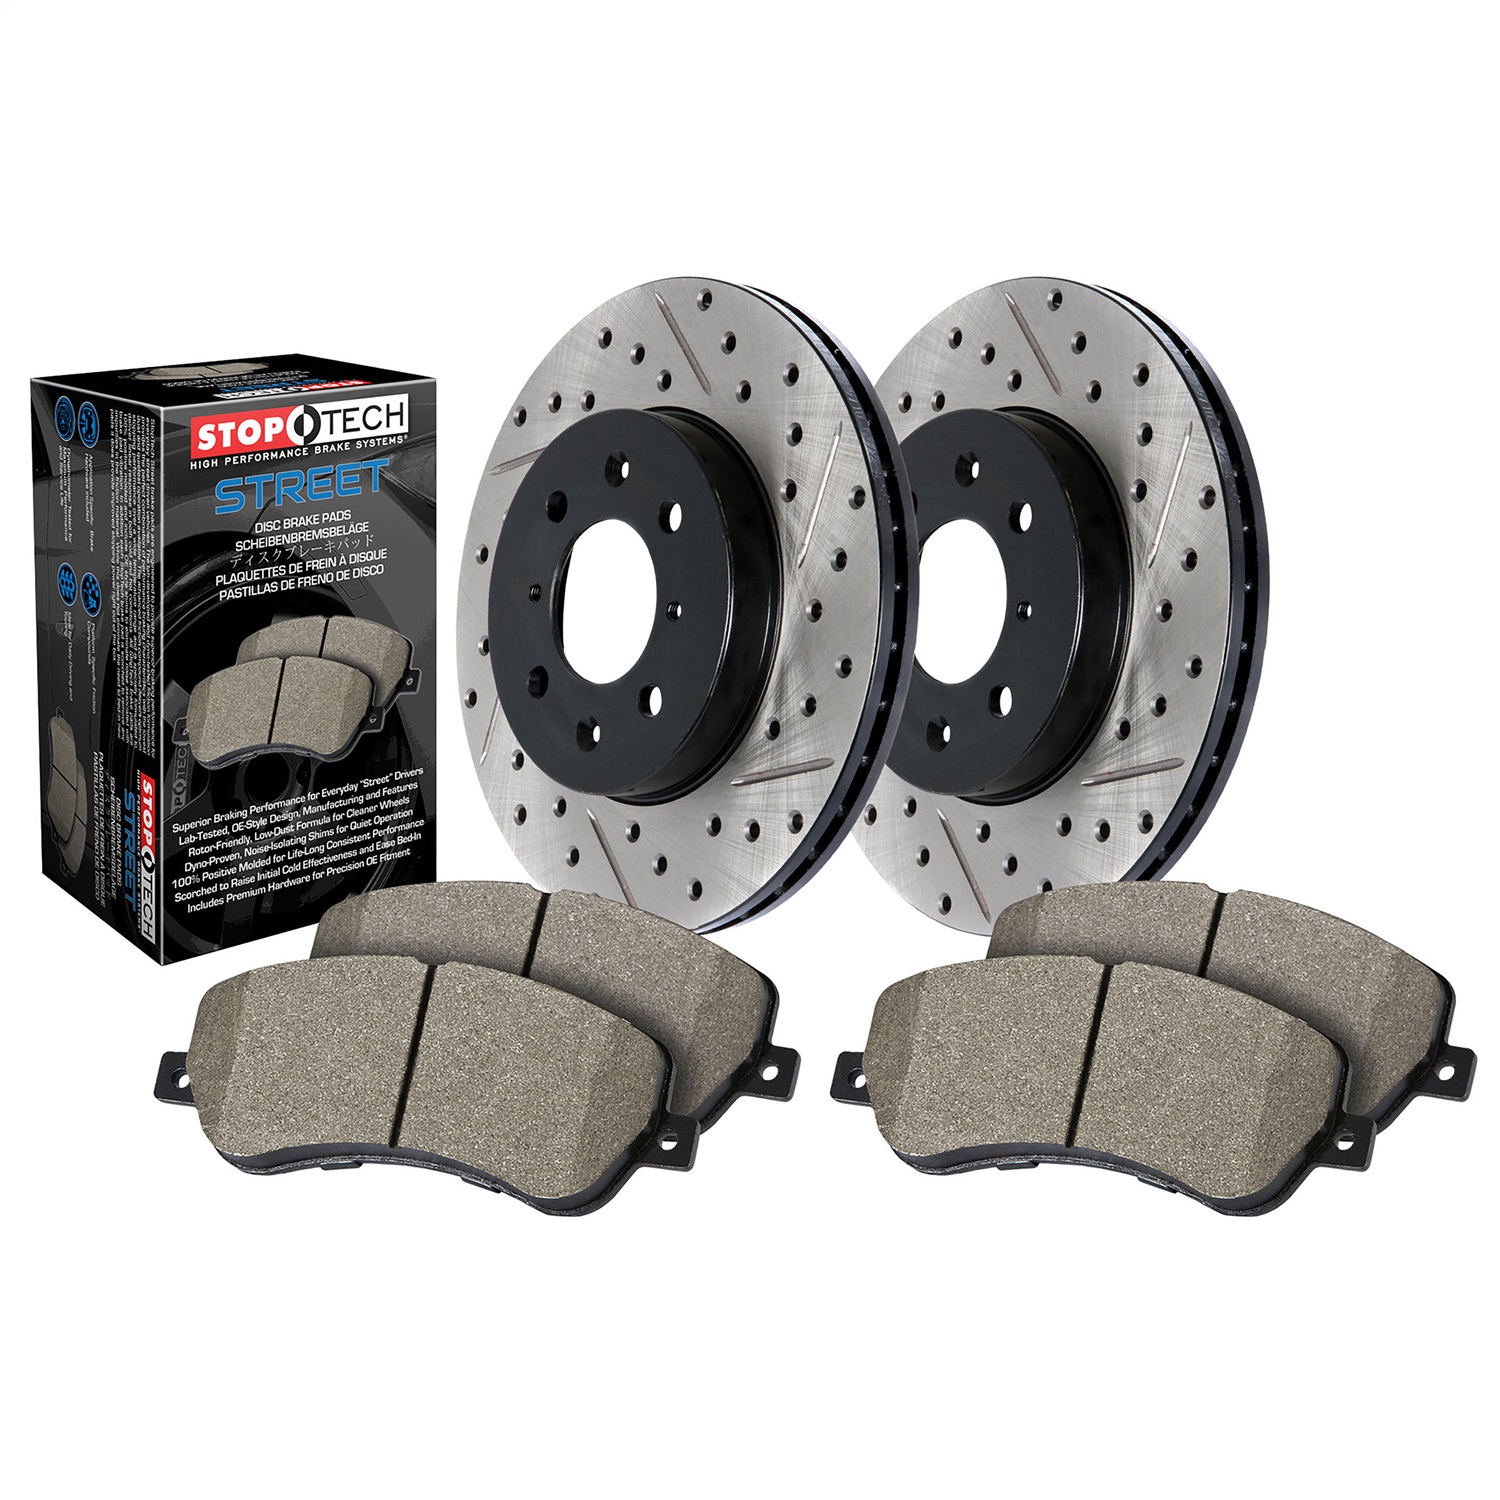 StopTech 938.40041 Disc Brake Upgrade Kit